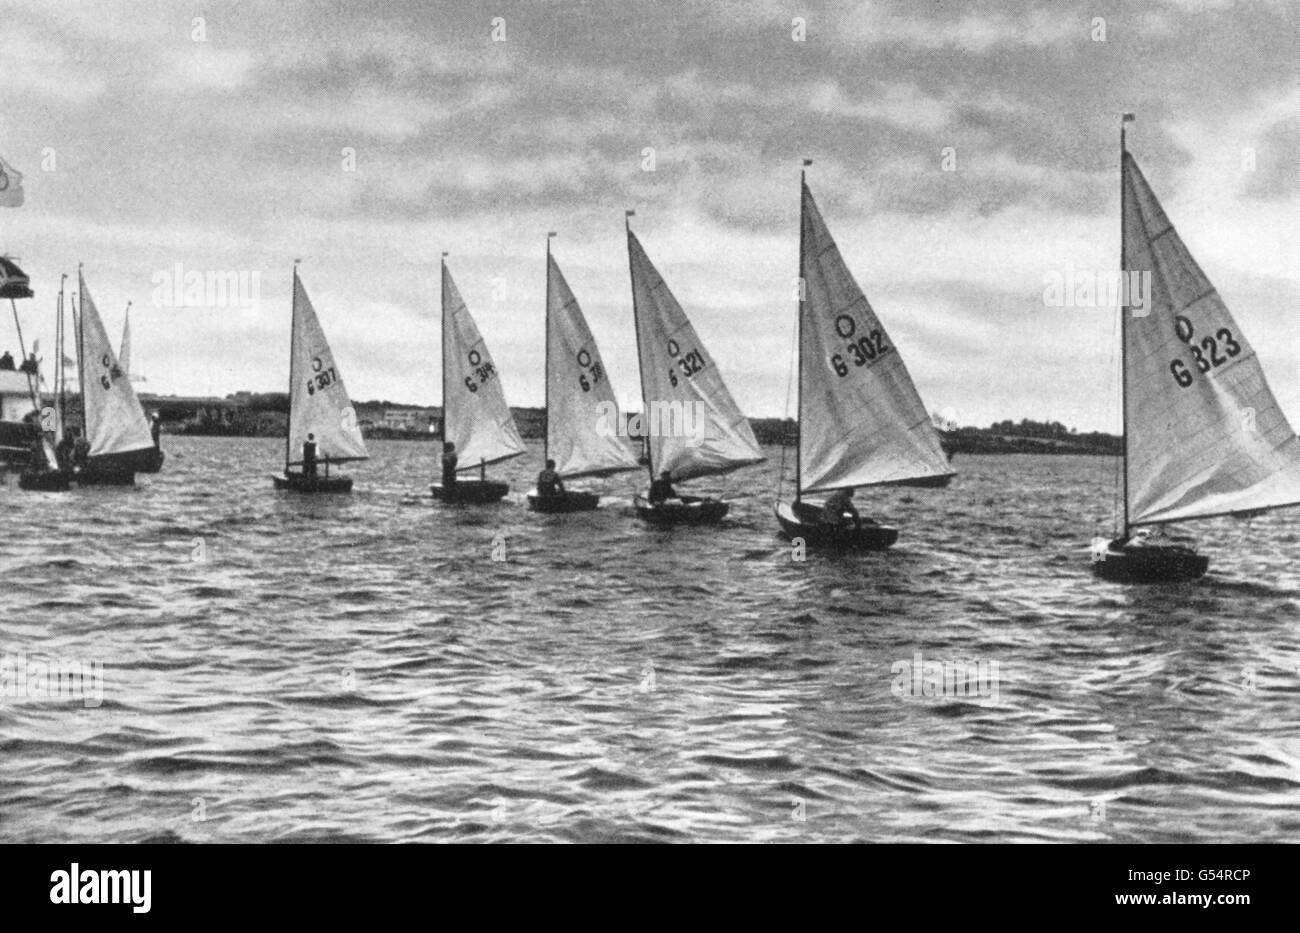 Jeux Olympiques - Berlin 1936 - voile - Kiel.La plus petite classe de bateaux, les dinghies olympiques (un homme) attendant le signal pour le début de leur course. Banque D'Images